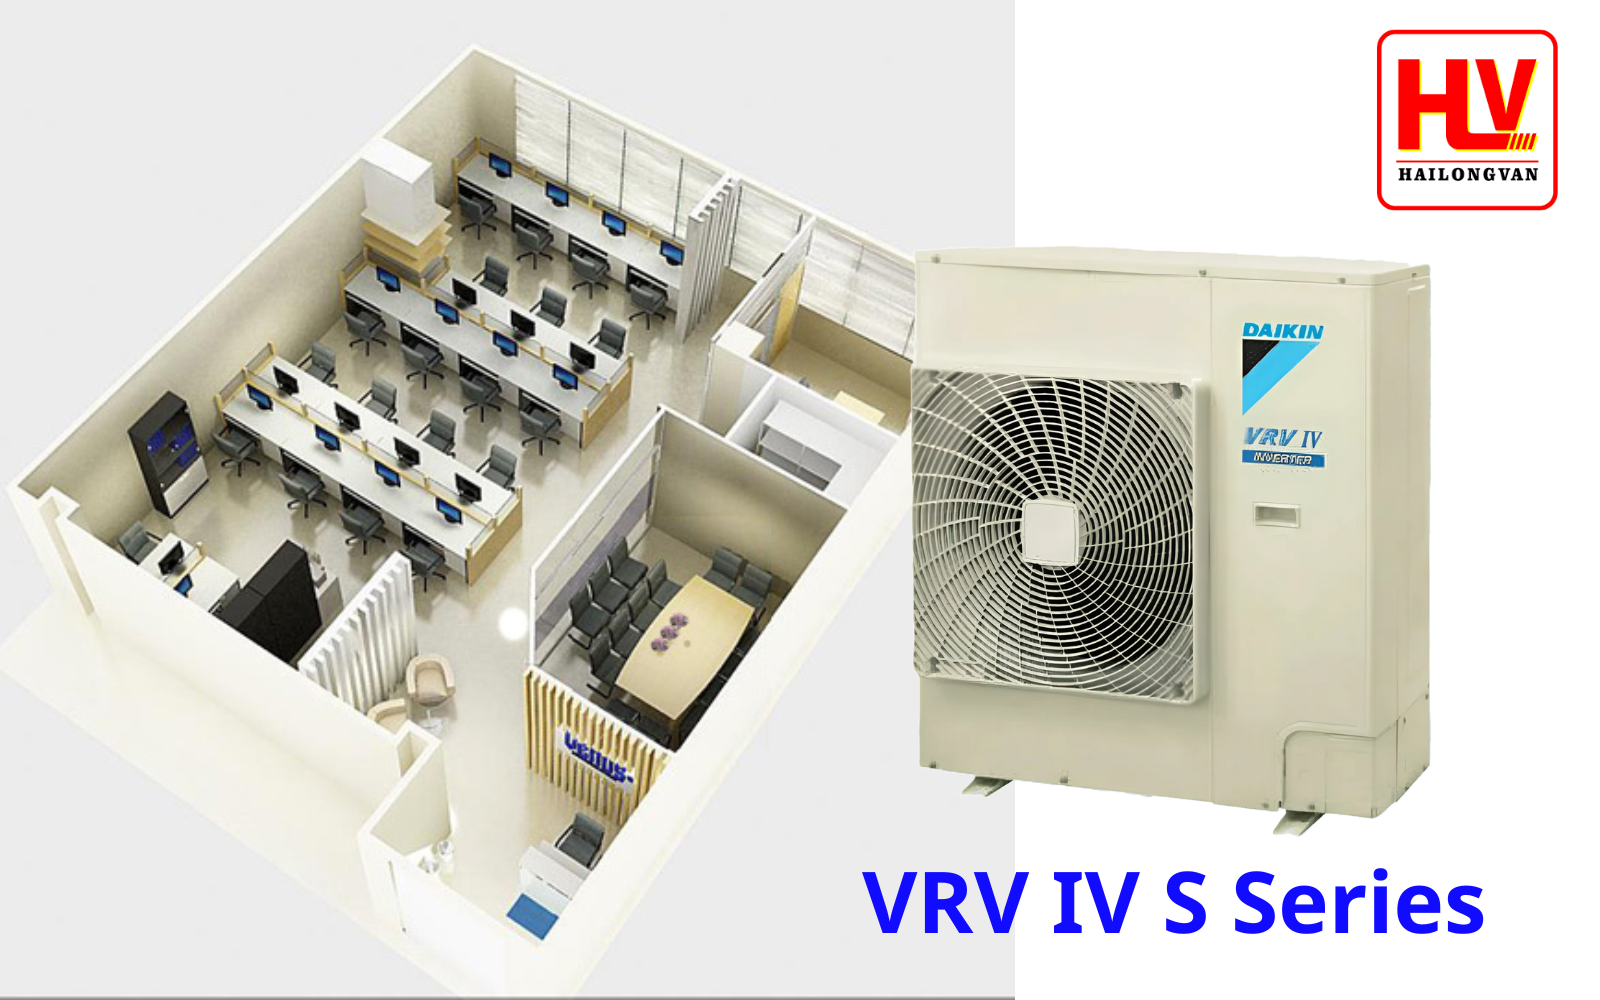 VRV IV S Series - Hệ thống làm mát hoàn hảo cho nhà ở, văn phòng, cửa hàng